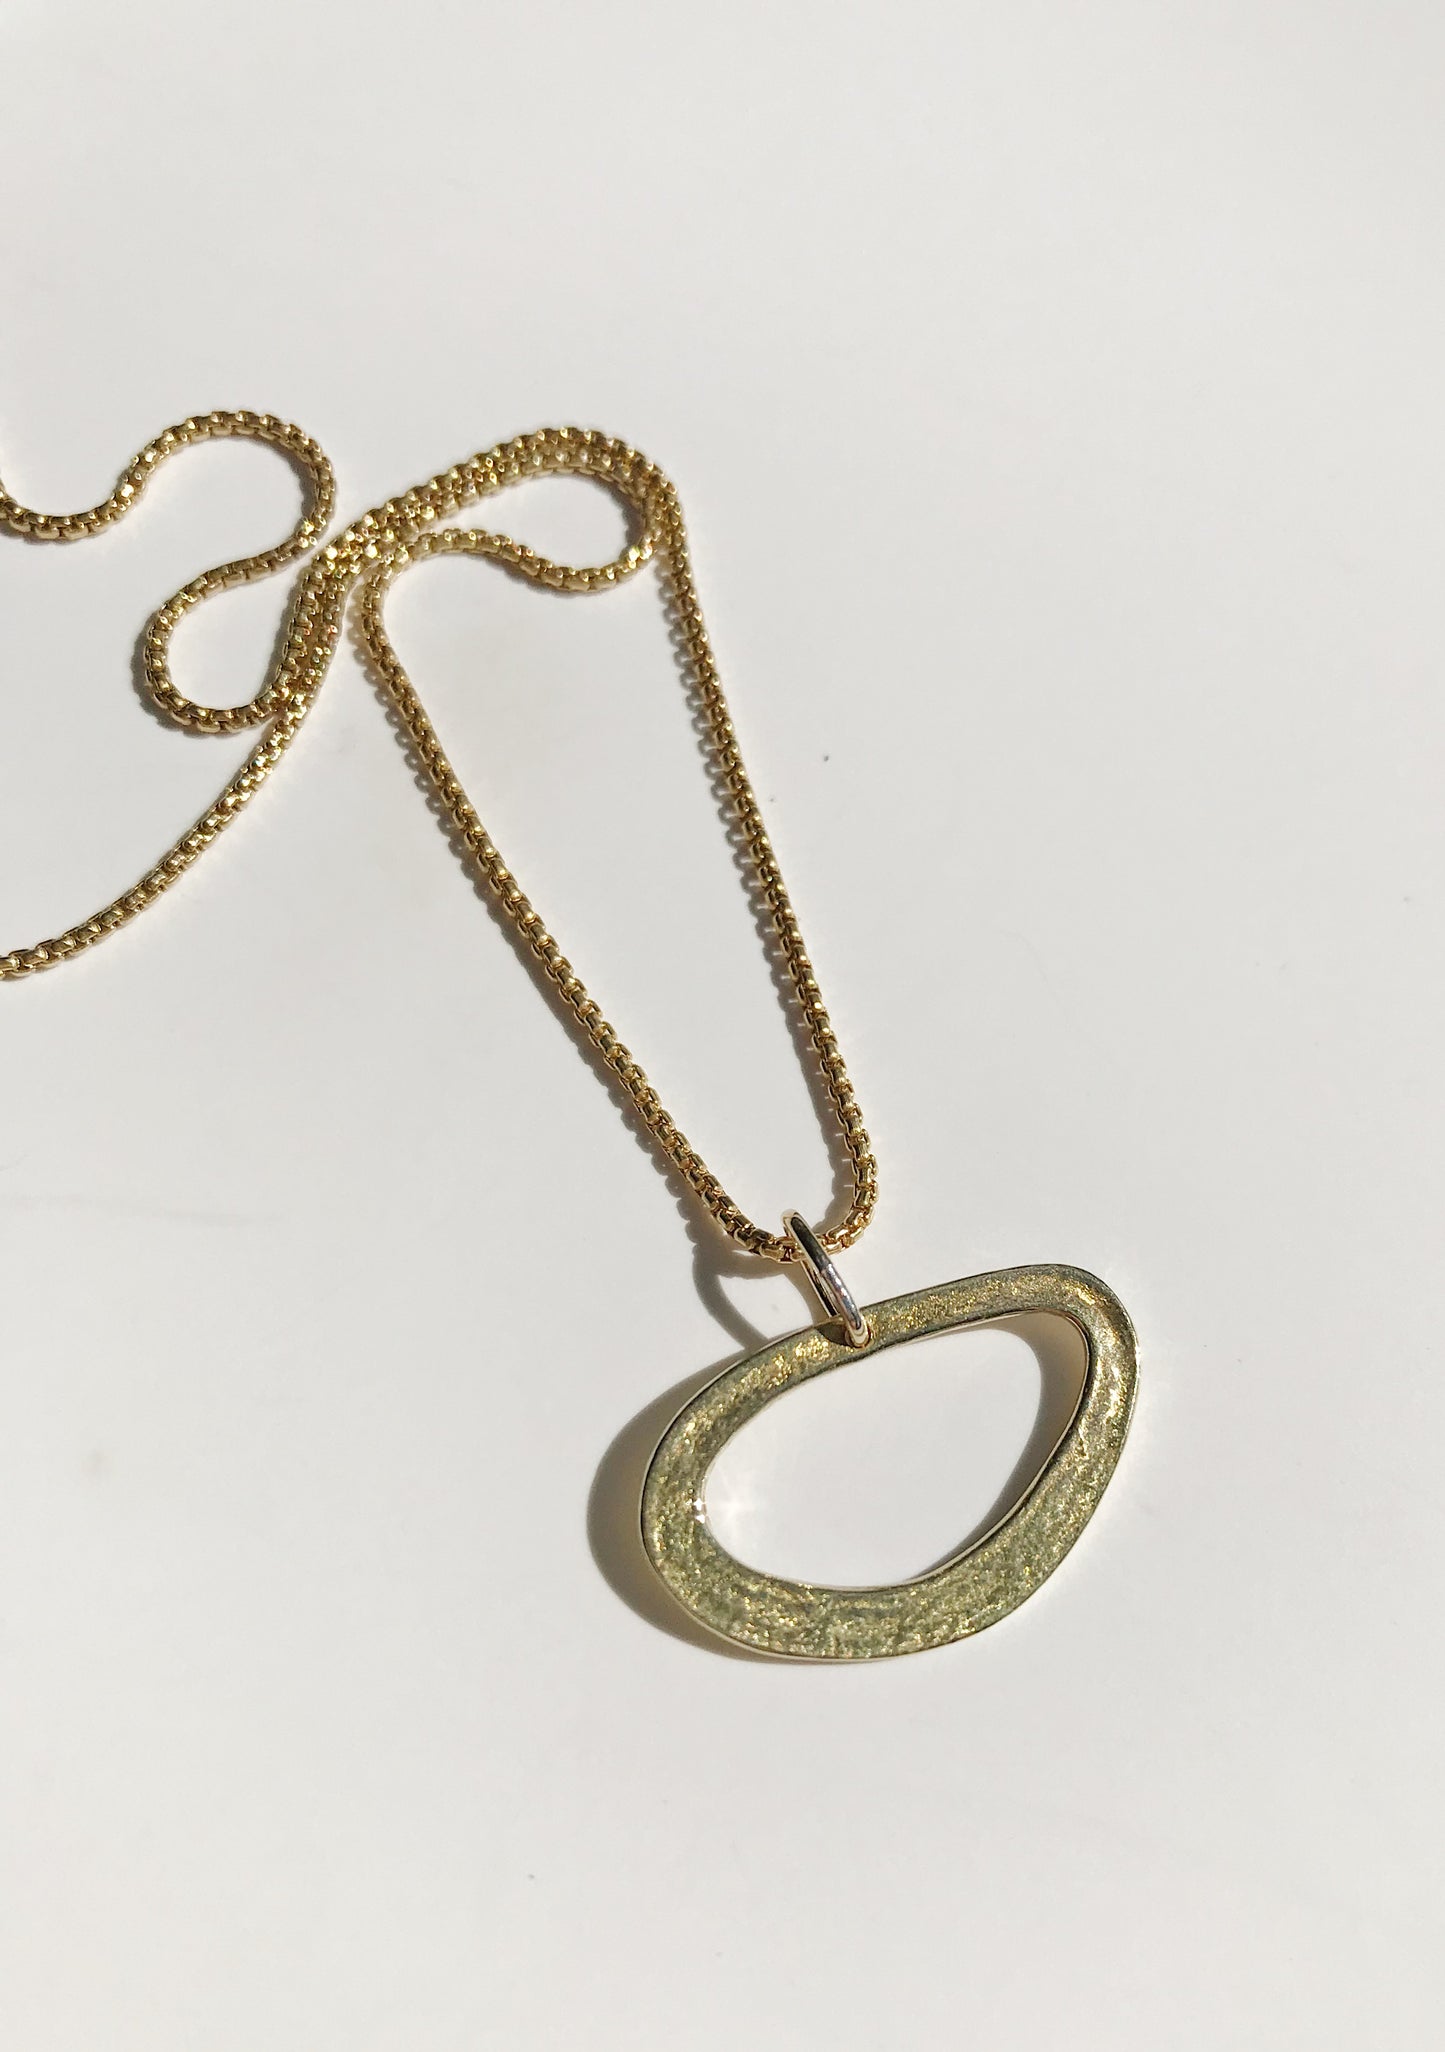 Bermuda necklace